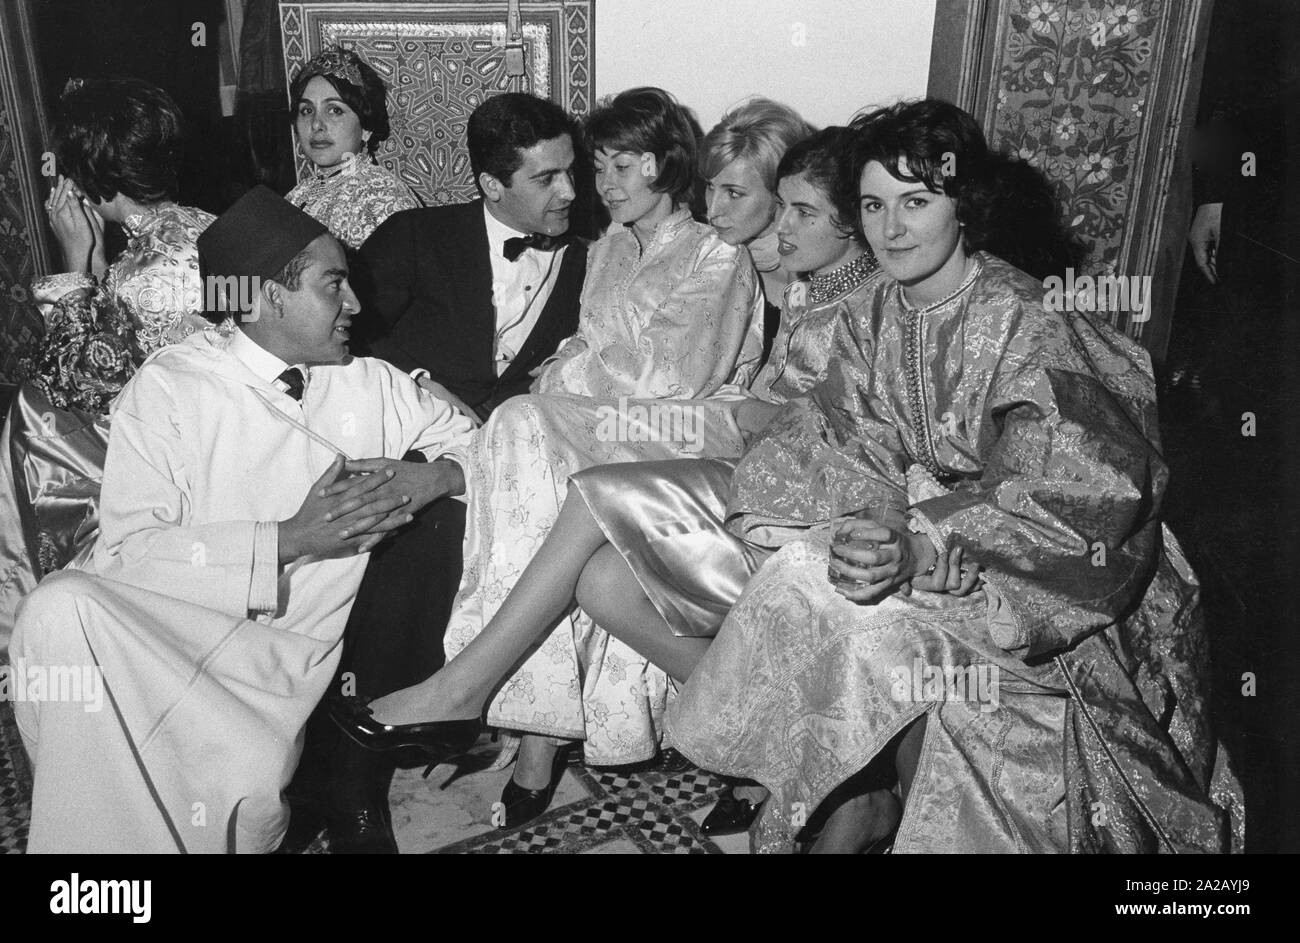 Die Gäste sitzen auf Teppichen und Kissen. Die Männer tragen sowohl europäische als formale Abnutzung und traditionelle arabische Gewänder. Die Damen kombinieren orientalische Kleidung mit Europäischen Schuhe und Frisuren. Stockfoto